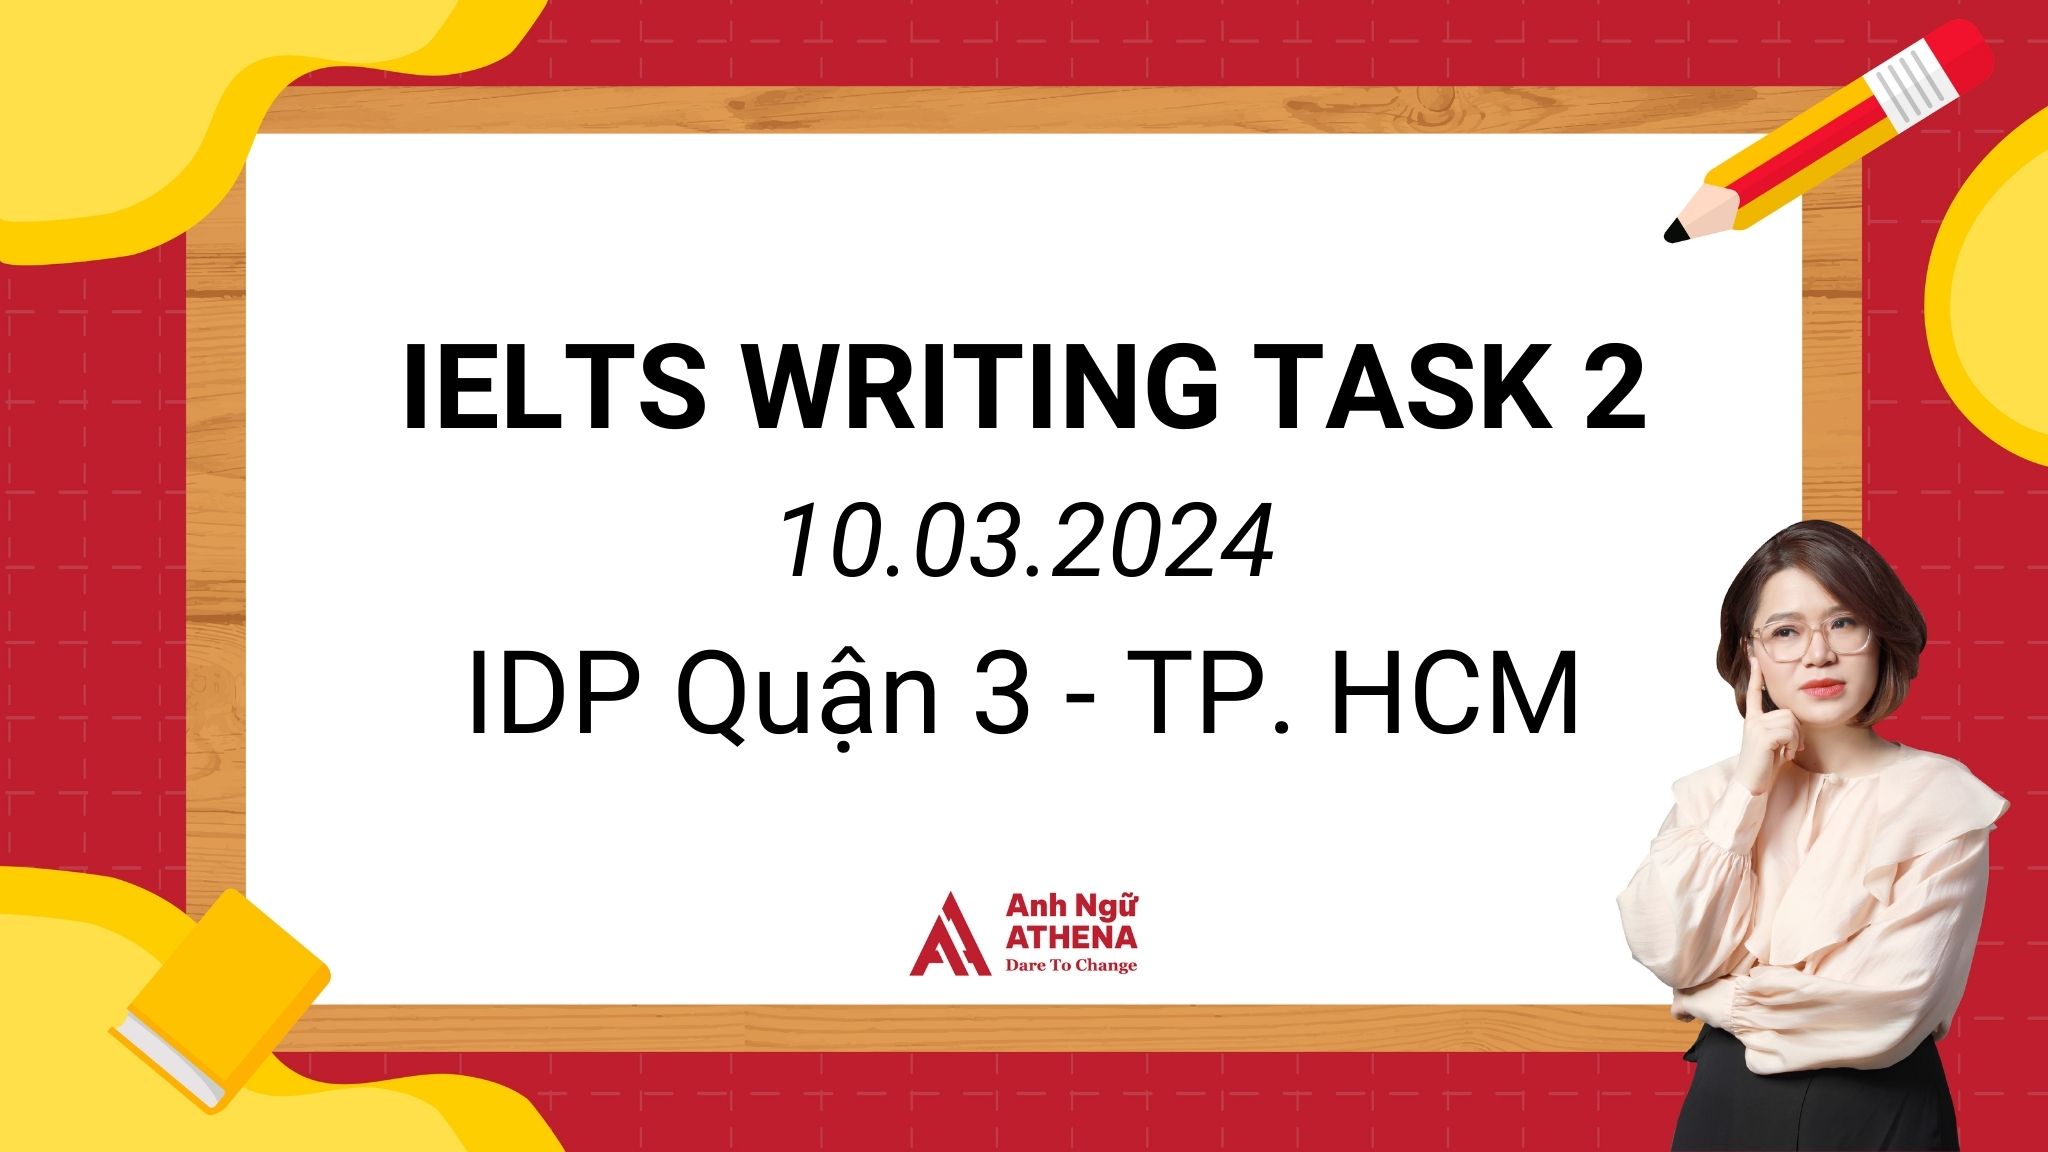 GIẢI ĐỀ CHI TIẾT IELTS WRITING TASK 2 - 10.03.2024 TẠI IDP Q3 TP. HCM